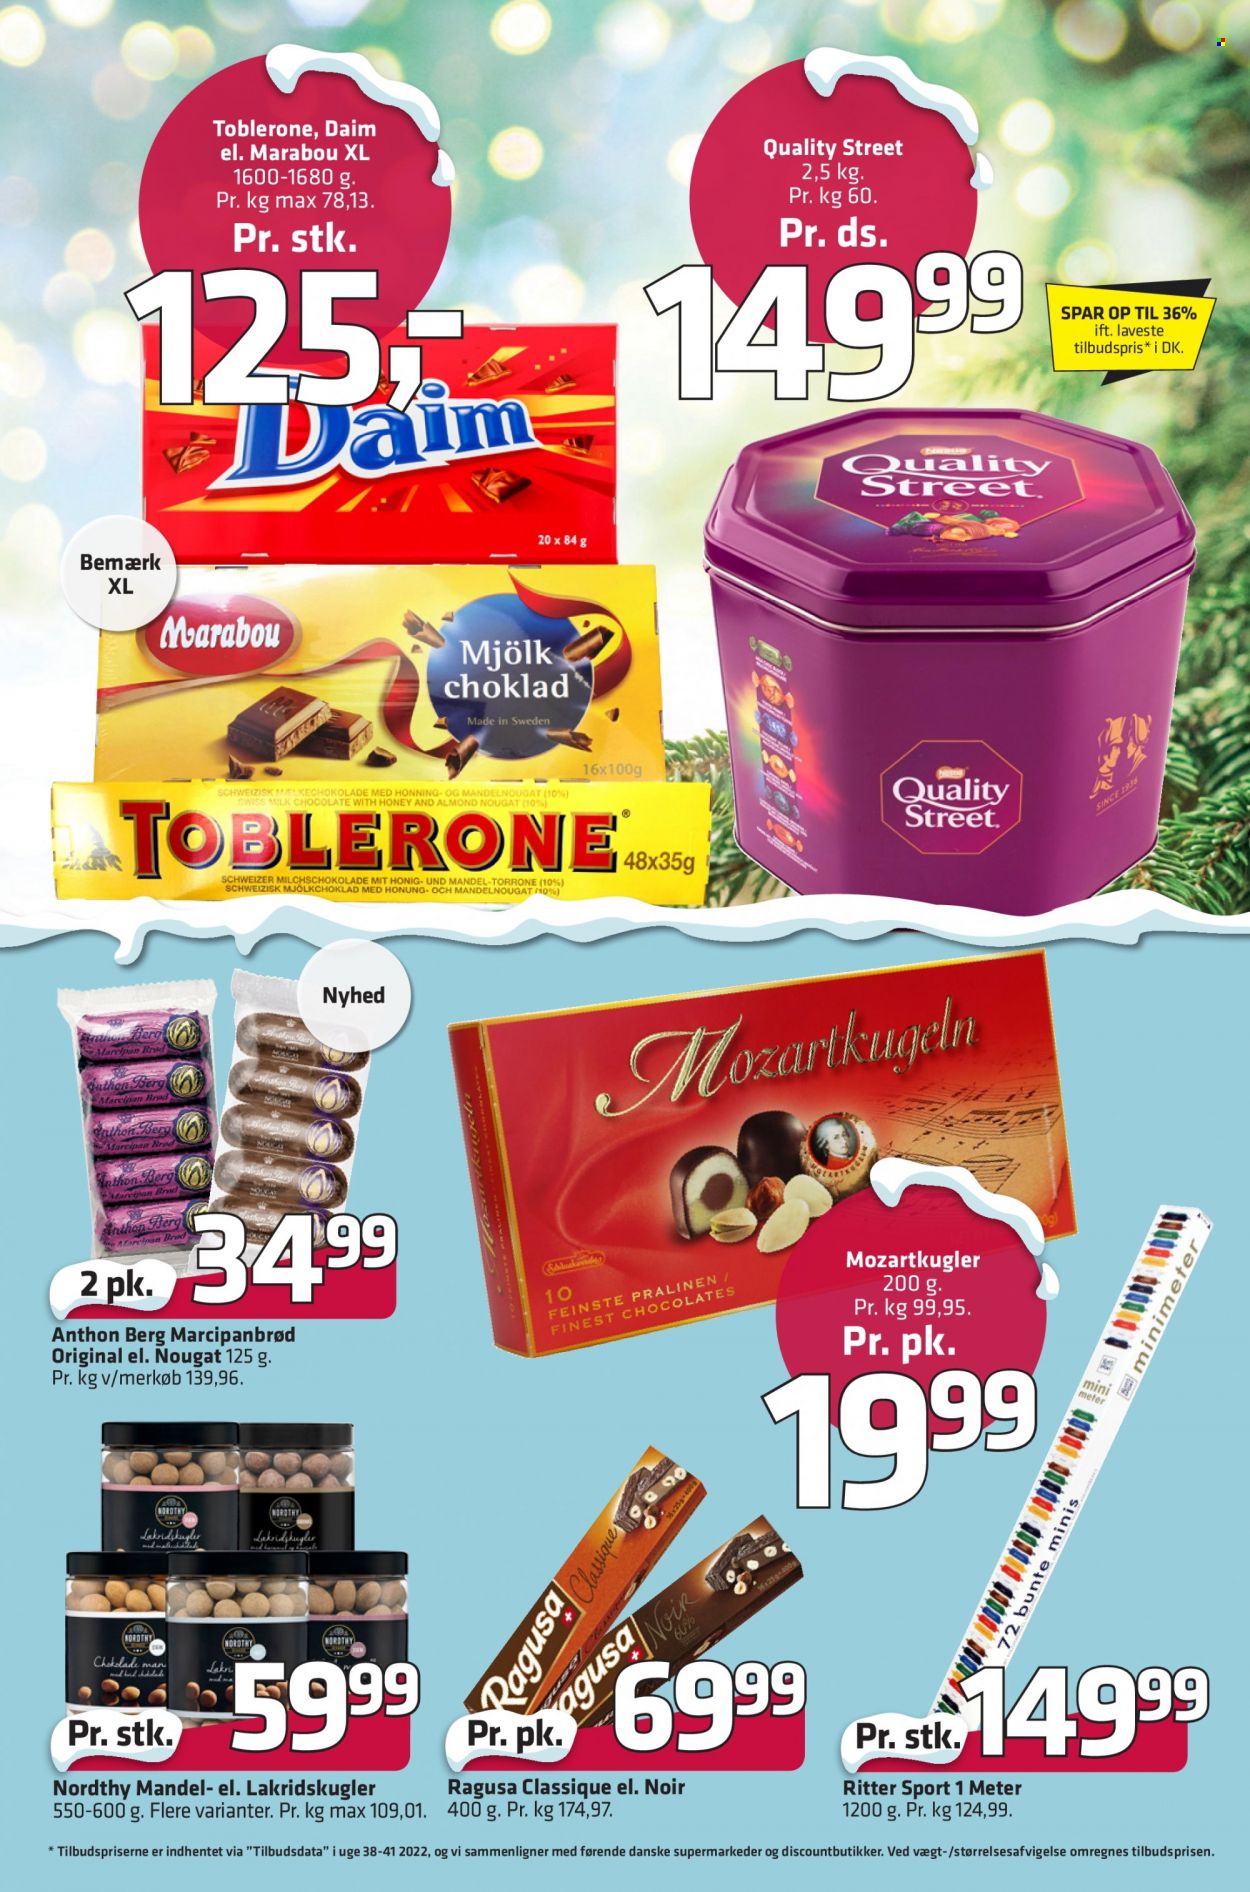 thumbnail - Fleggaard reklamblad - 30/11 2022 - 13/12 2022 - varor från reklamblad - bröd, mjölkchoklad, Ritter Sport, Anthon Berg, choklad, Toblerone, Via. Sida 7.